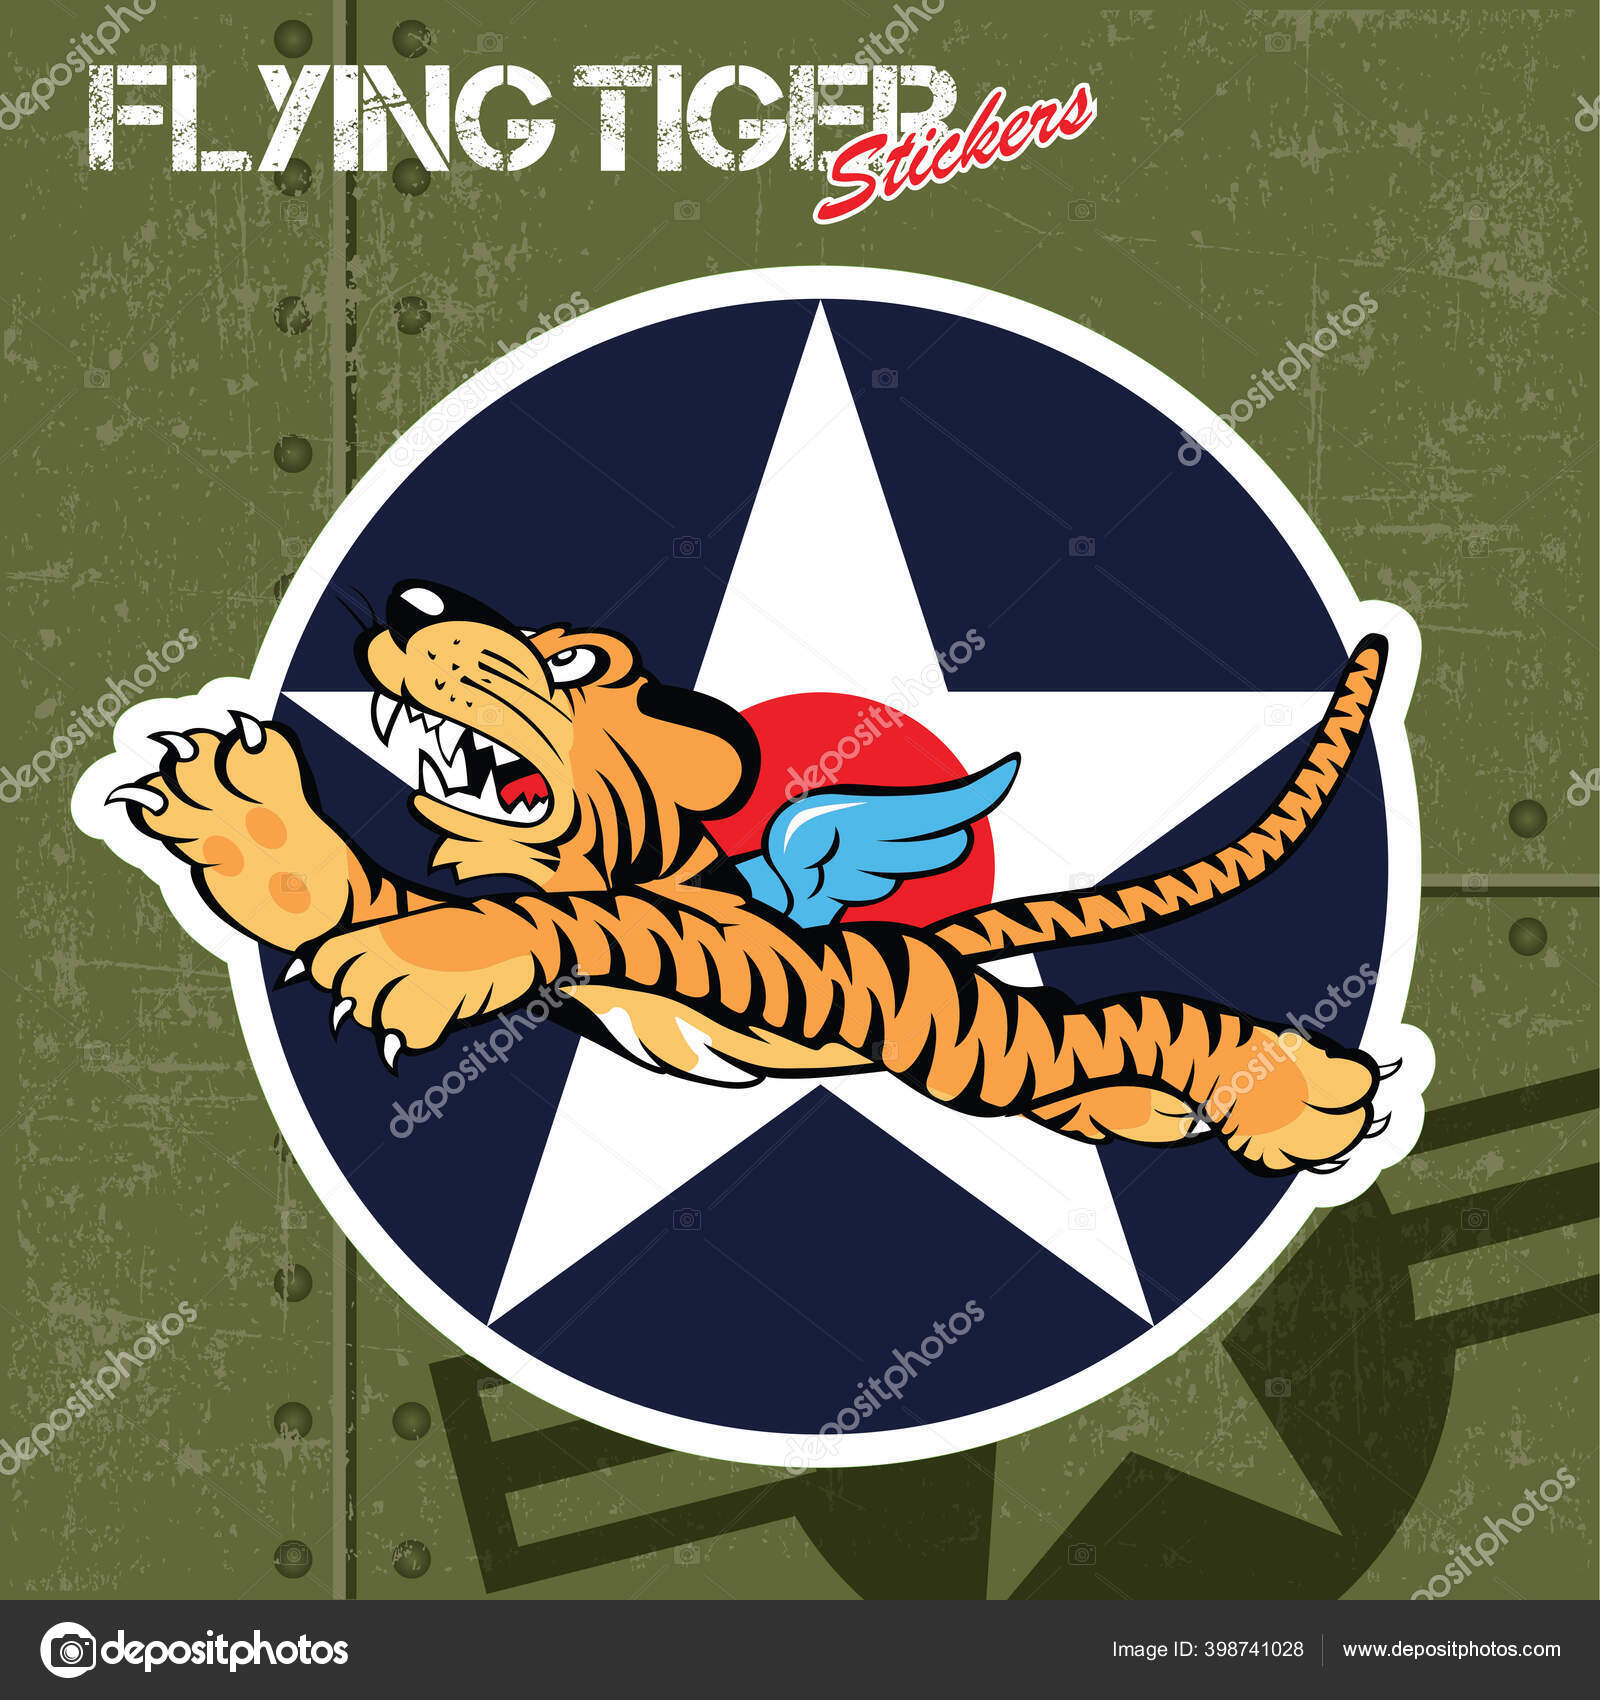 Flying Tiger Vinyl Red Blue Icon Illstration Stock Illustration ©thinkliketiger@gmail.com #398741028